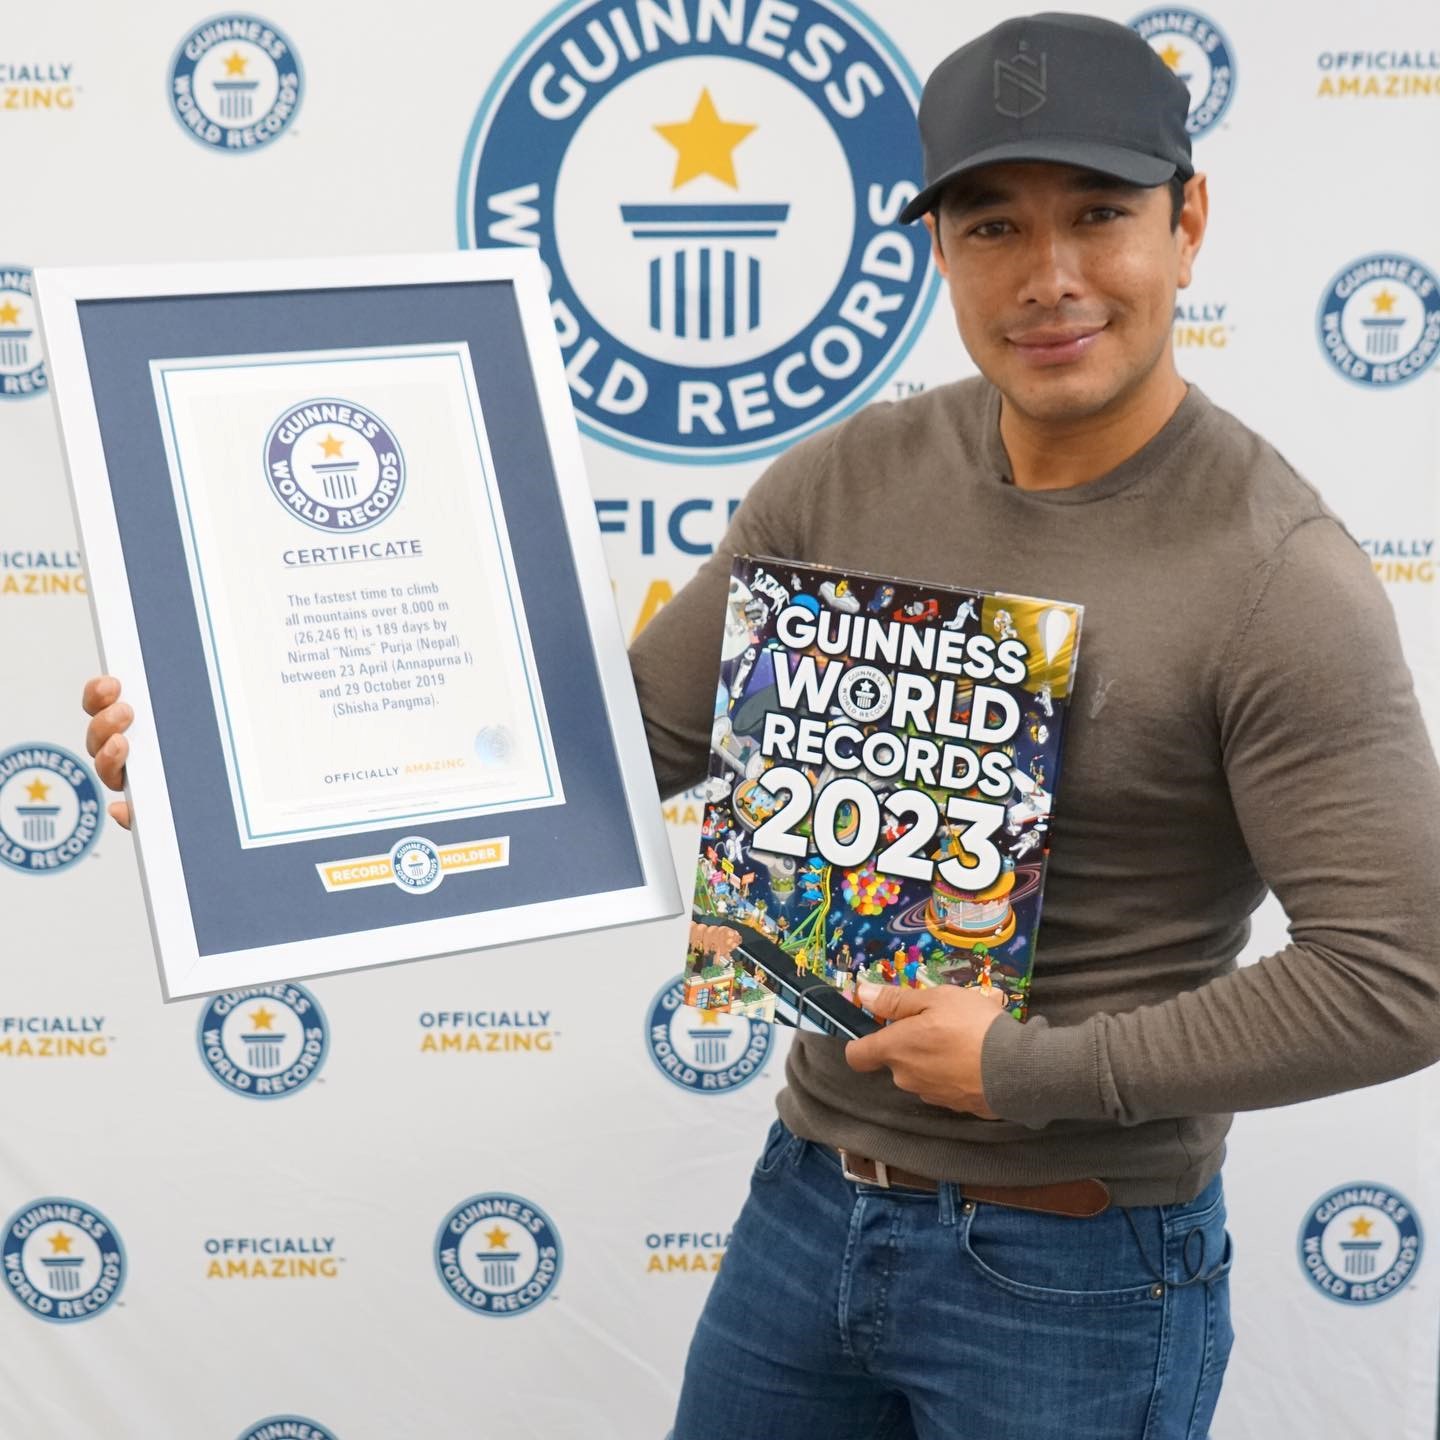 Nepali adventurer Nims awarded for Guinness World Records